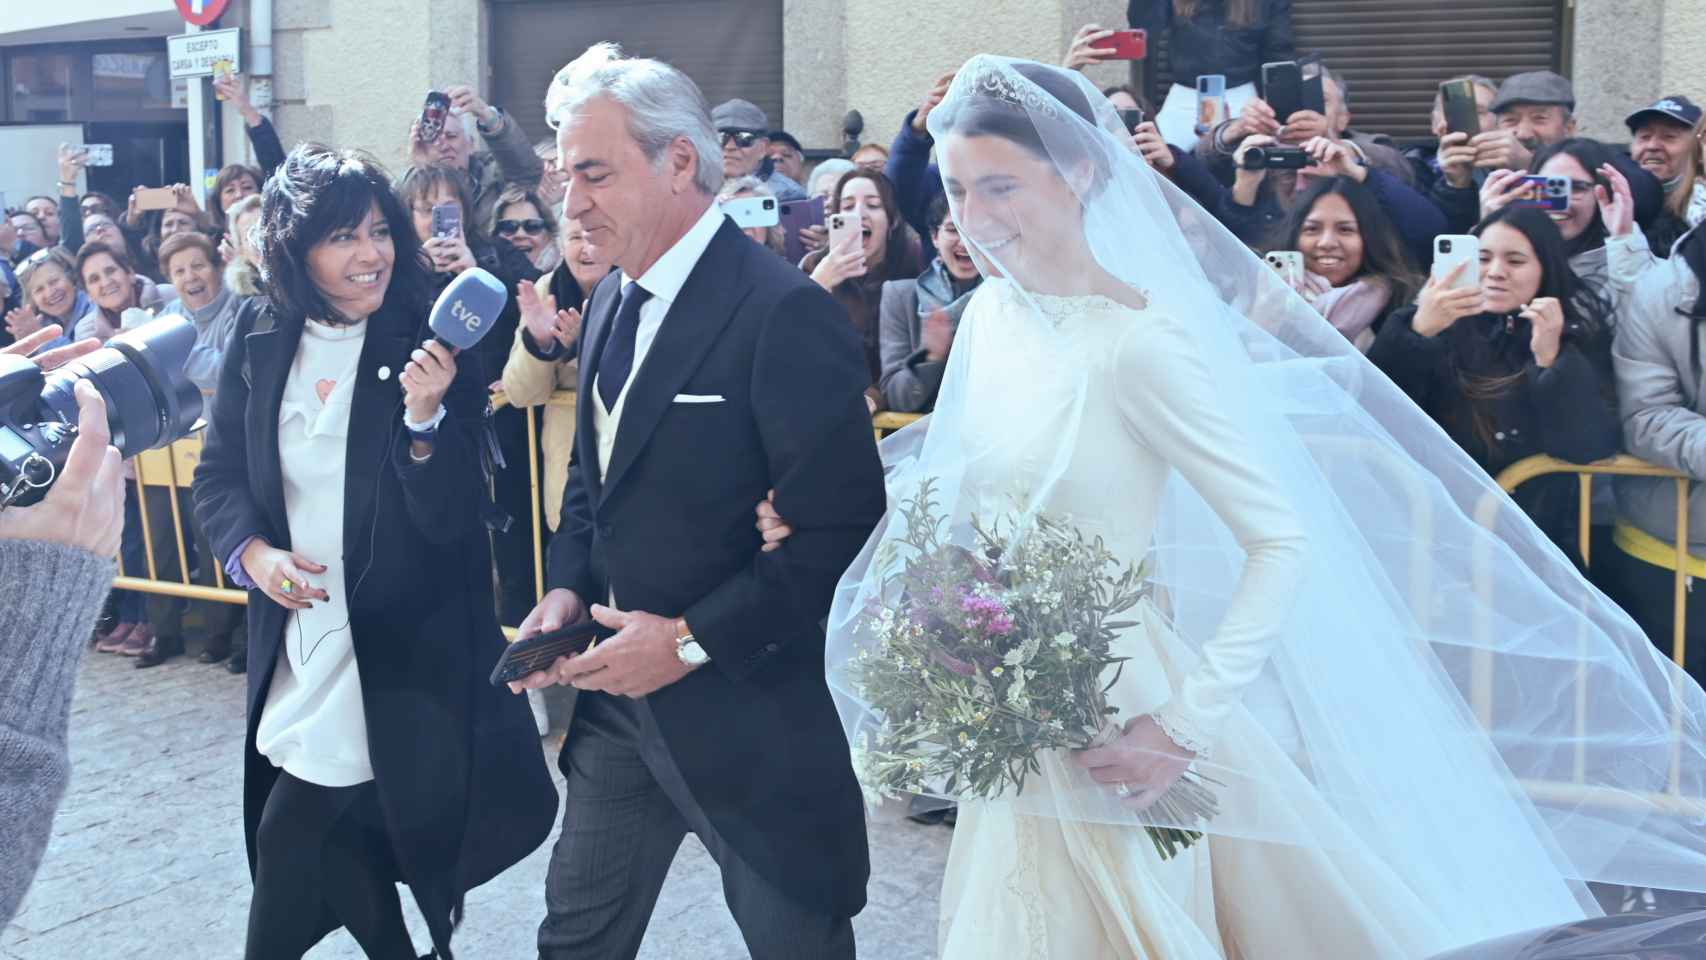 Ana, la novia, entrando en la iglesia del brazo de su padre, Carlos Sainz.